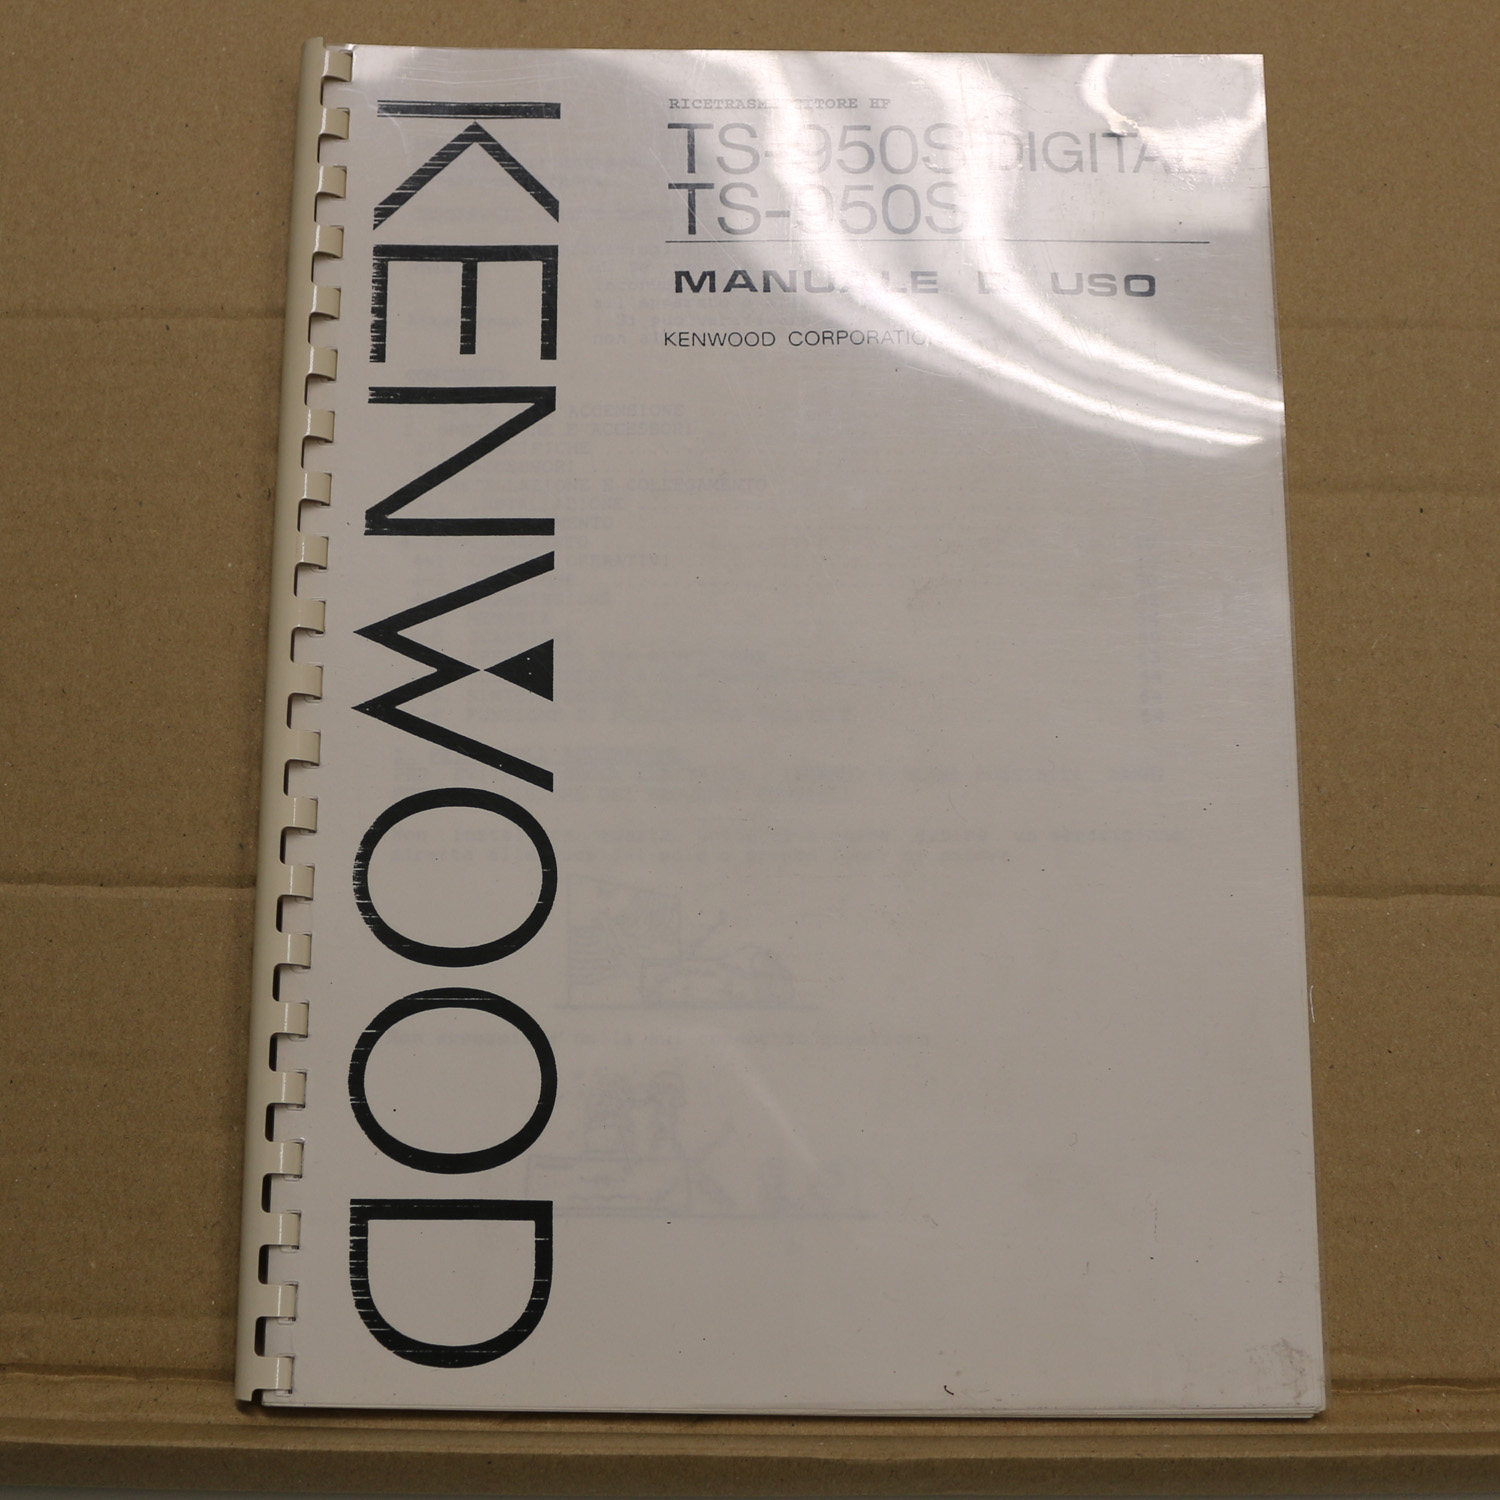 Kenwood TS-950S Mauale d` uso